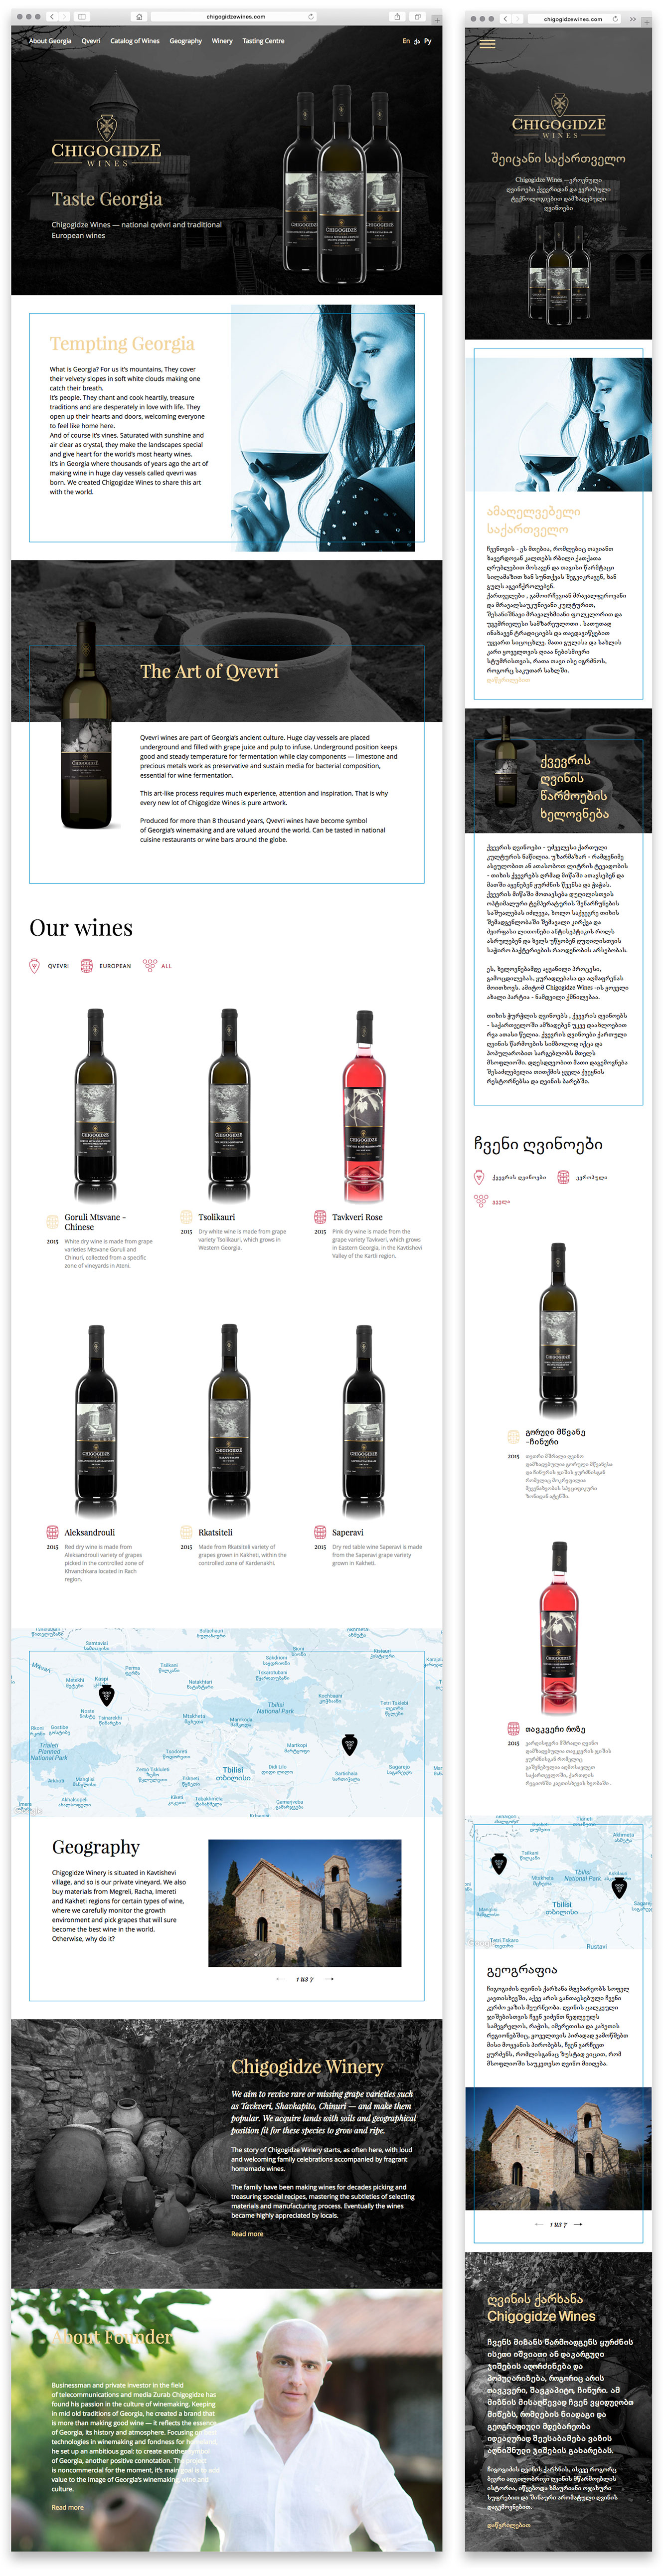 Создание адаптивного промо-сайта производителя грузинского вина Chigogidze Wines